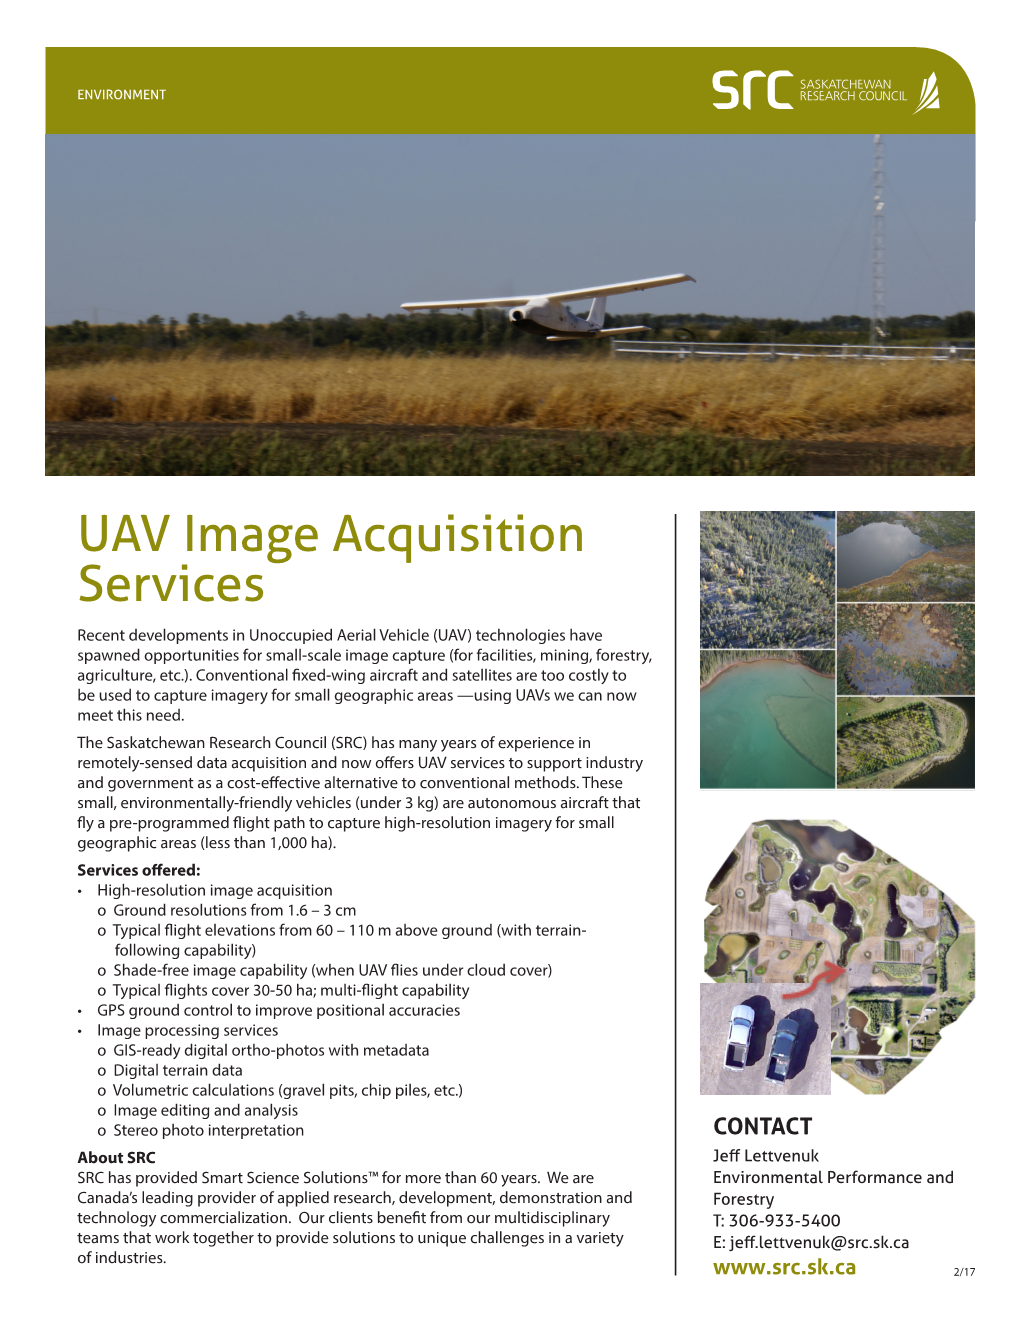 UAV Image Acquisition Services